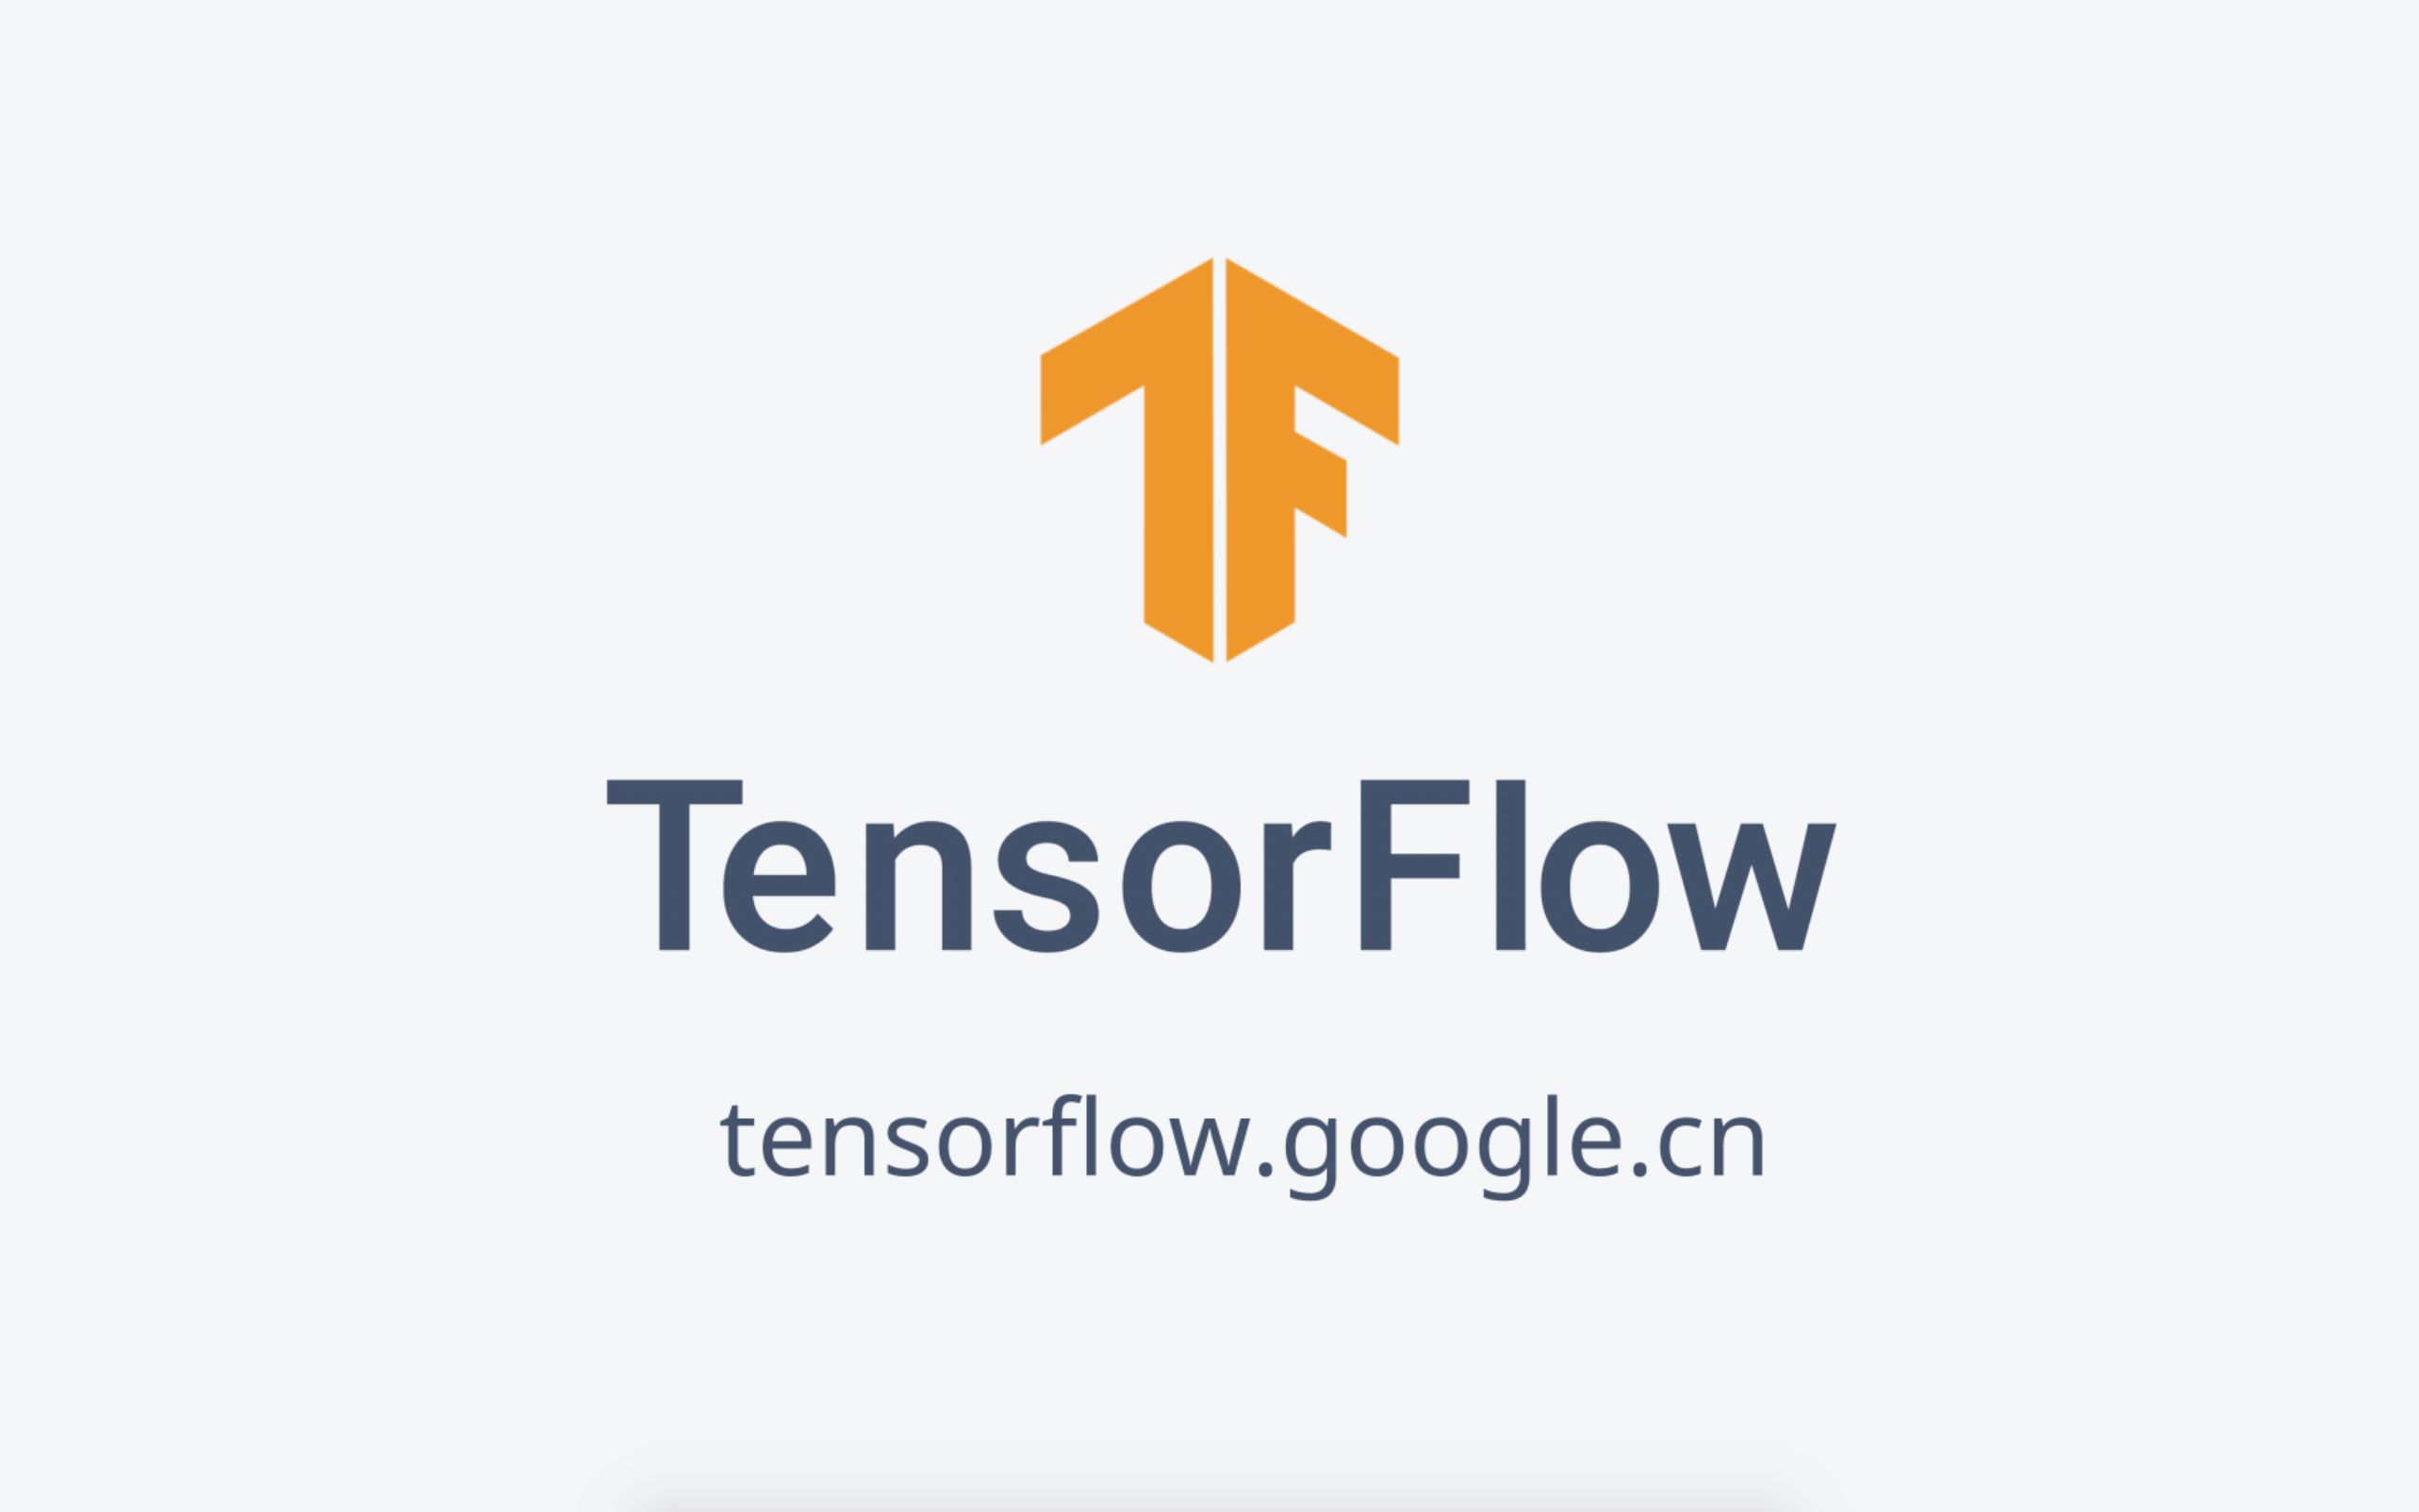 为什么选择使用 tensorflow ?